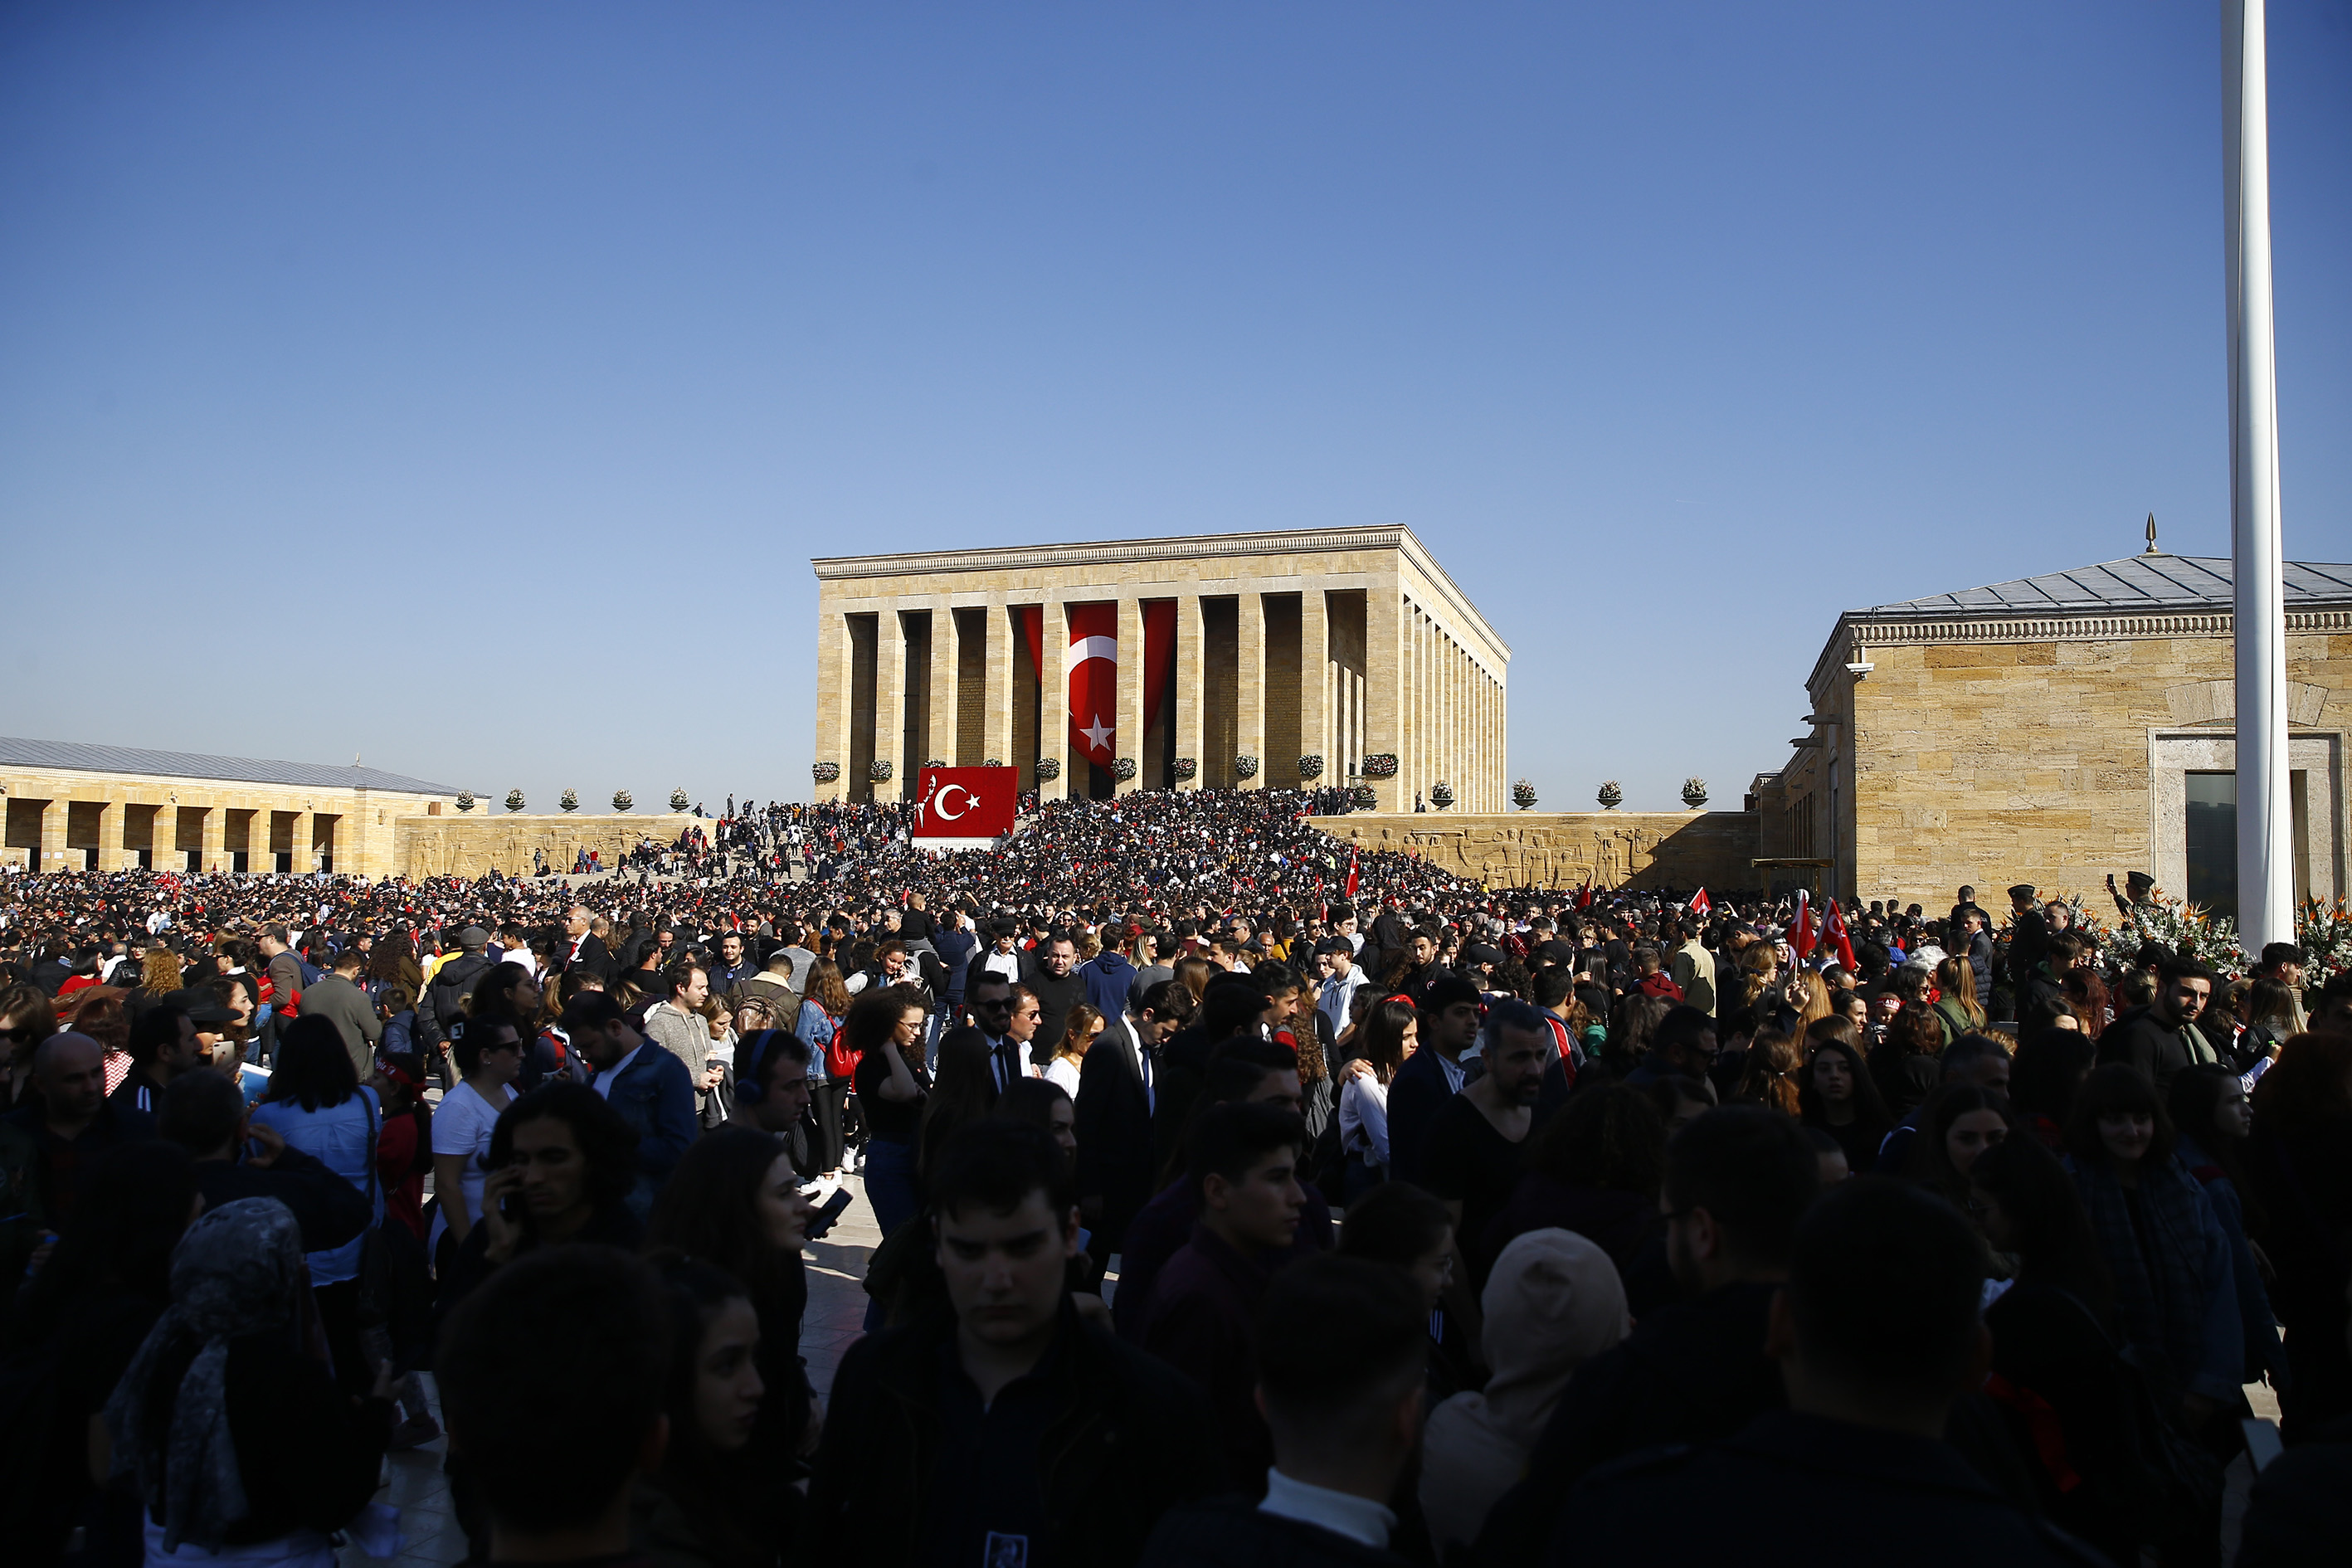 Türkiye Cumhuriyeti'nin kurucusu Büyük Önder Mustafa Kemal Atatürk, ebediyete intikalinin 81'inci yılında Anıtkabir'de düzenlenen devlet töreniyle anıldı. Anıtkabir, resmi törenden sonra ziyaretçilere açıldı.